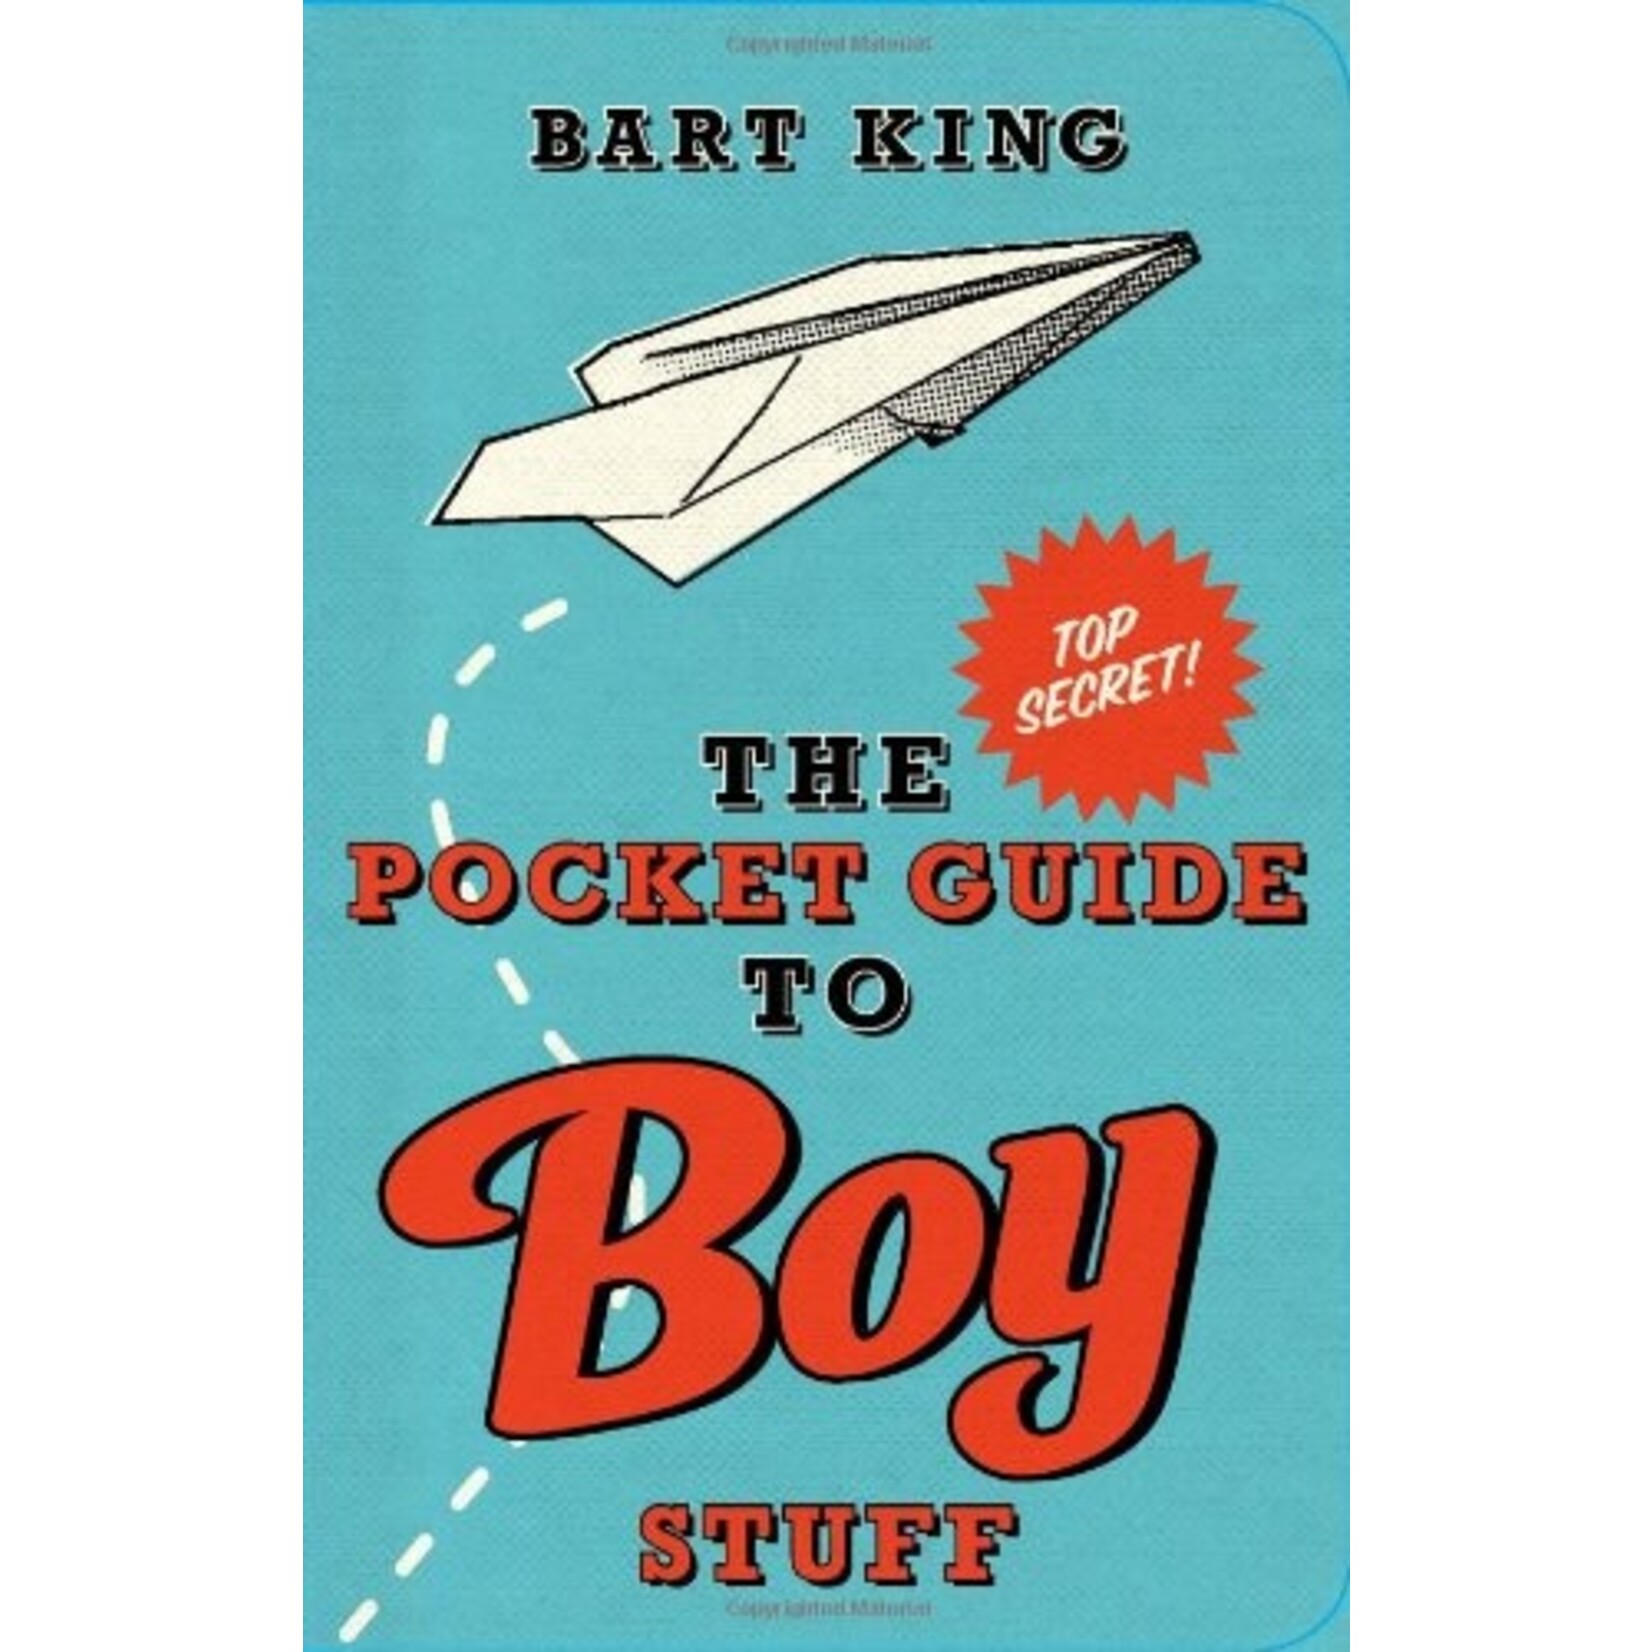 Gibbs Smith Pocket Guide to Boy Stuff